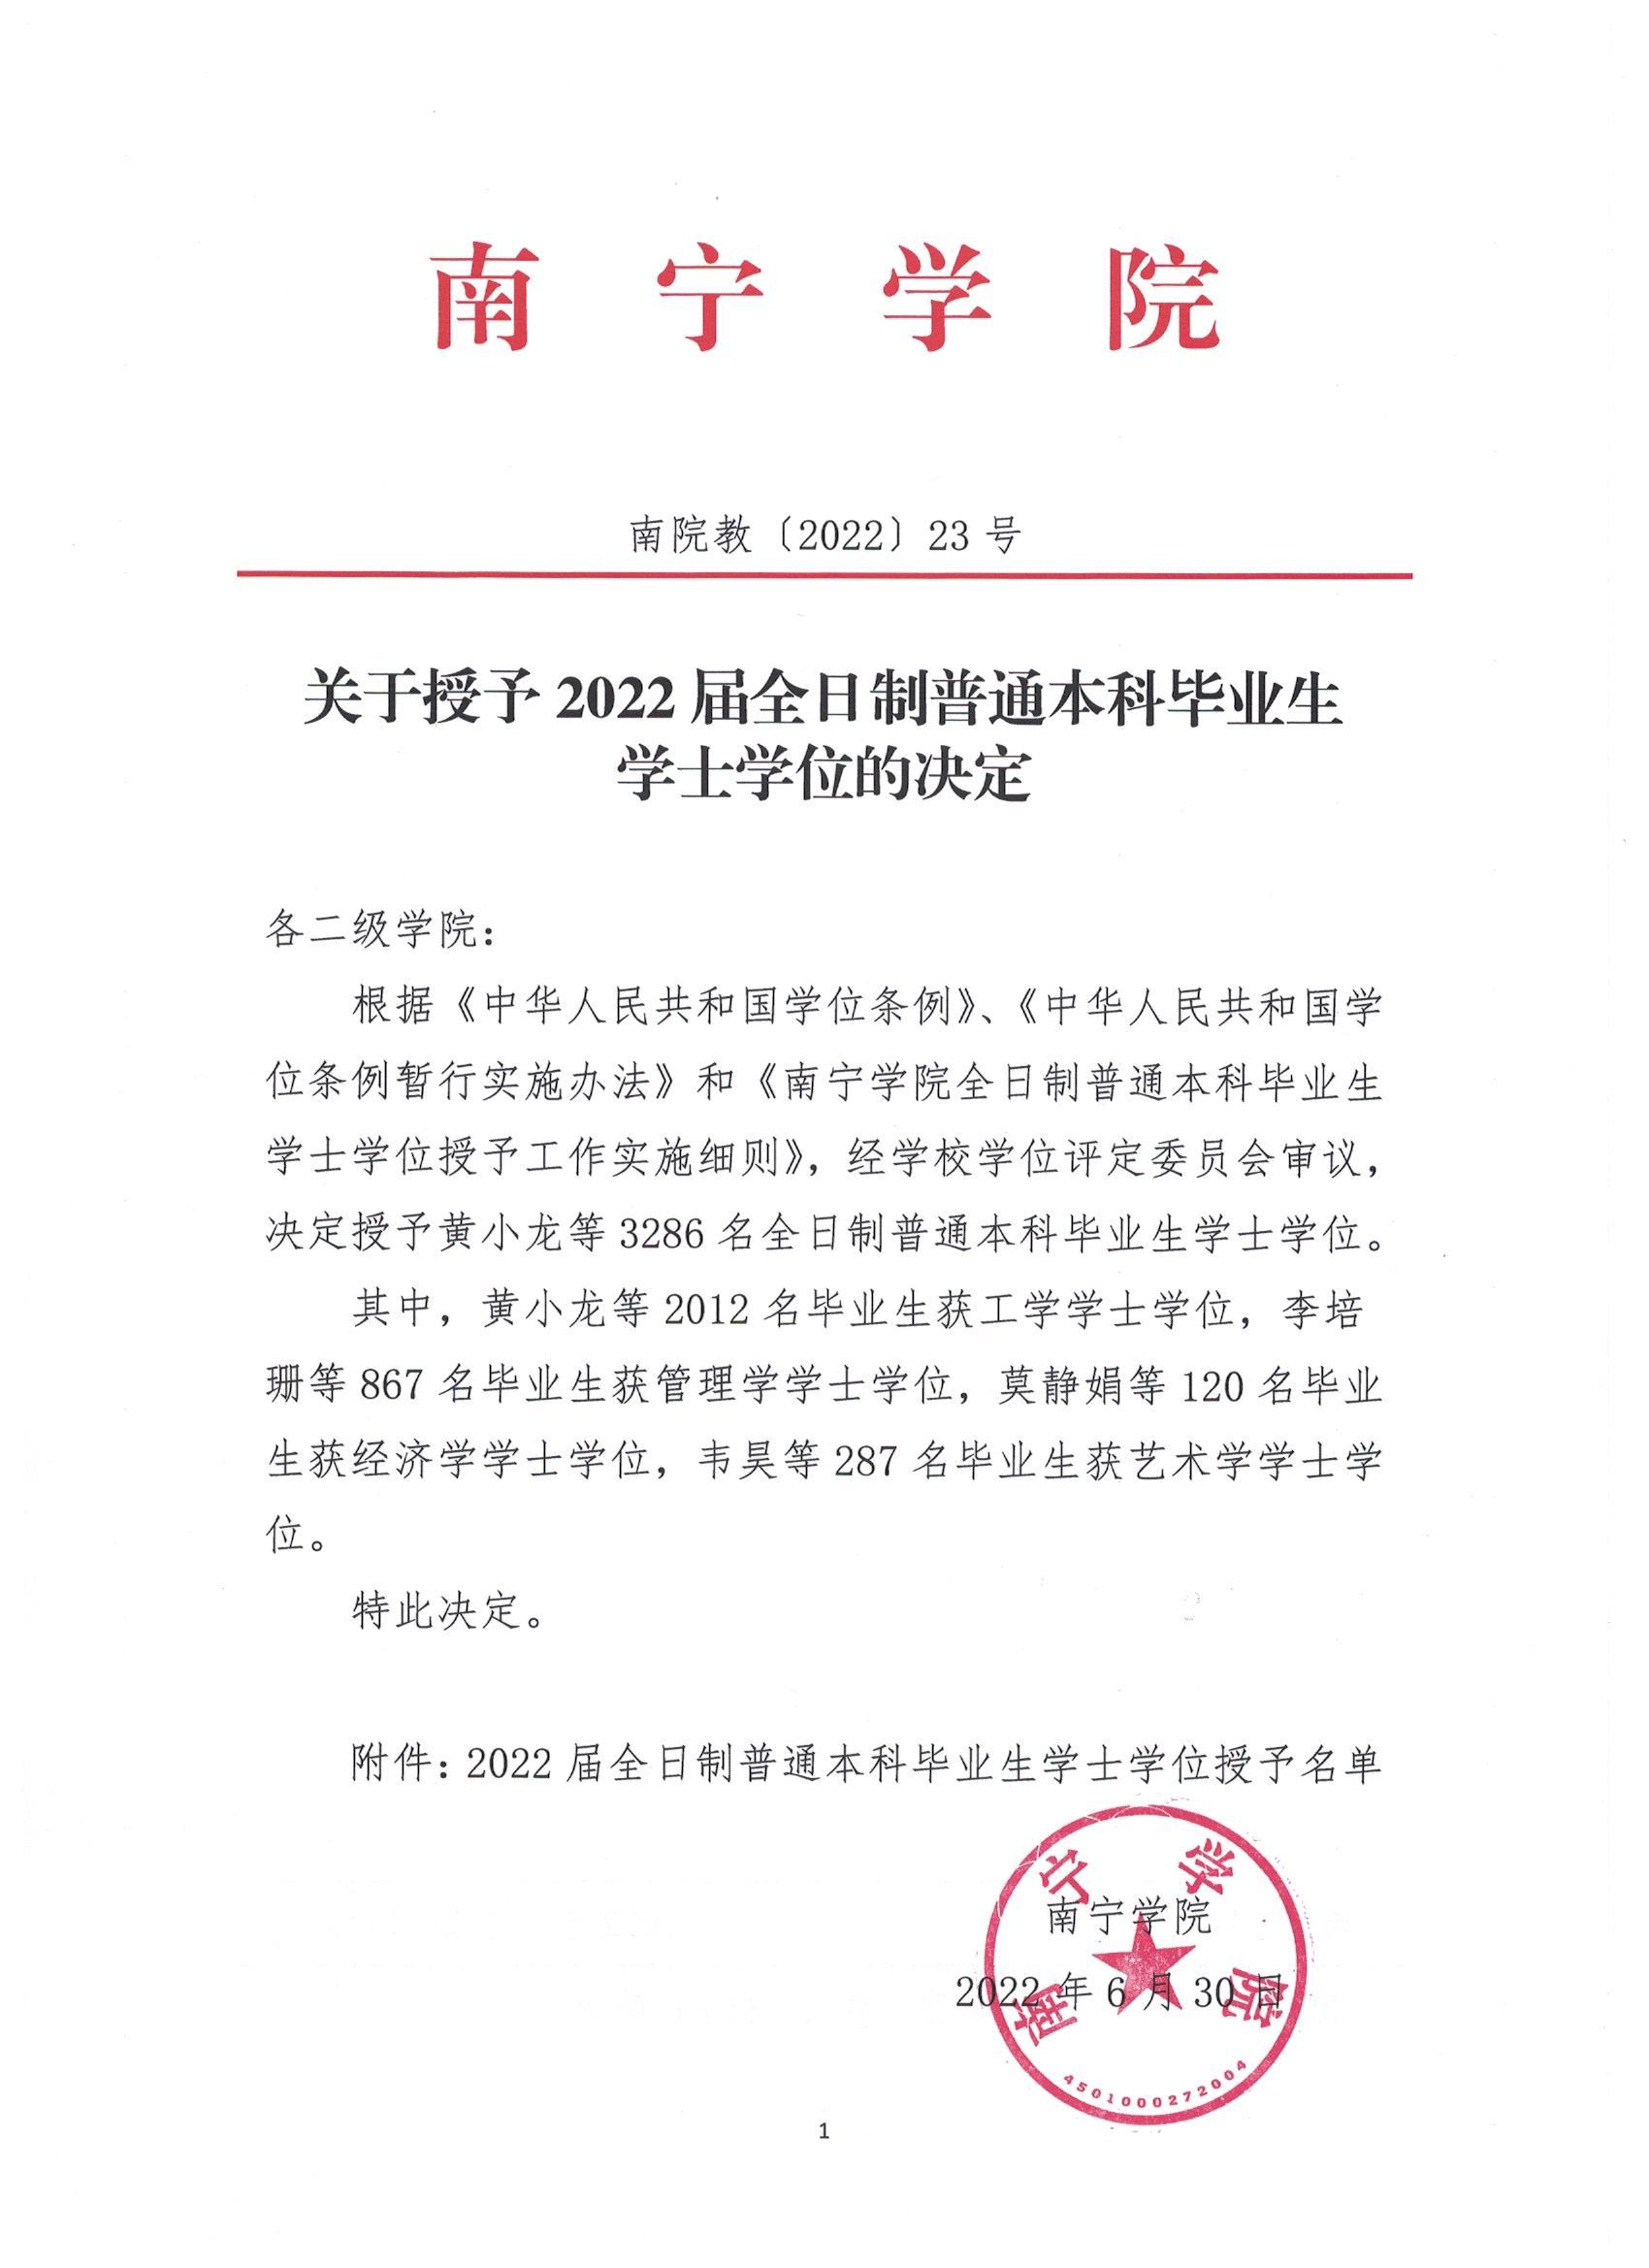 2019年高校征兵工作先进单位表彰通报-郑州商贸旅游职业学院